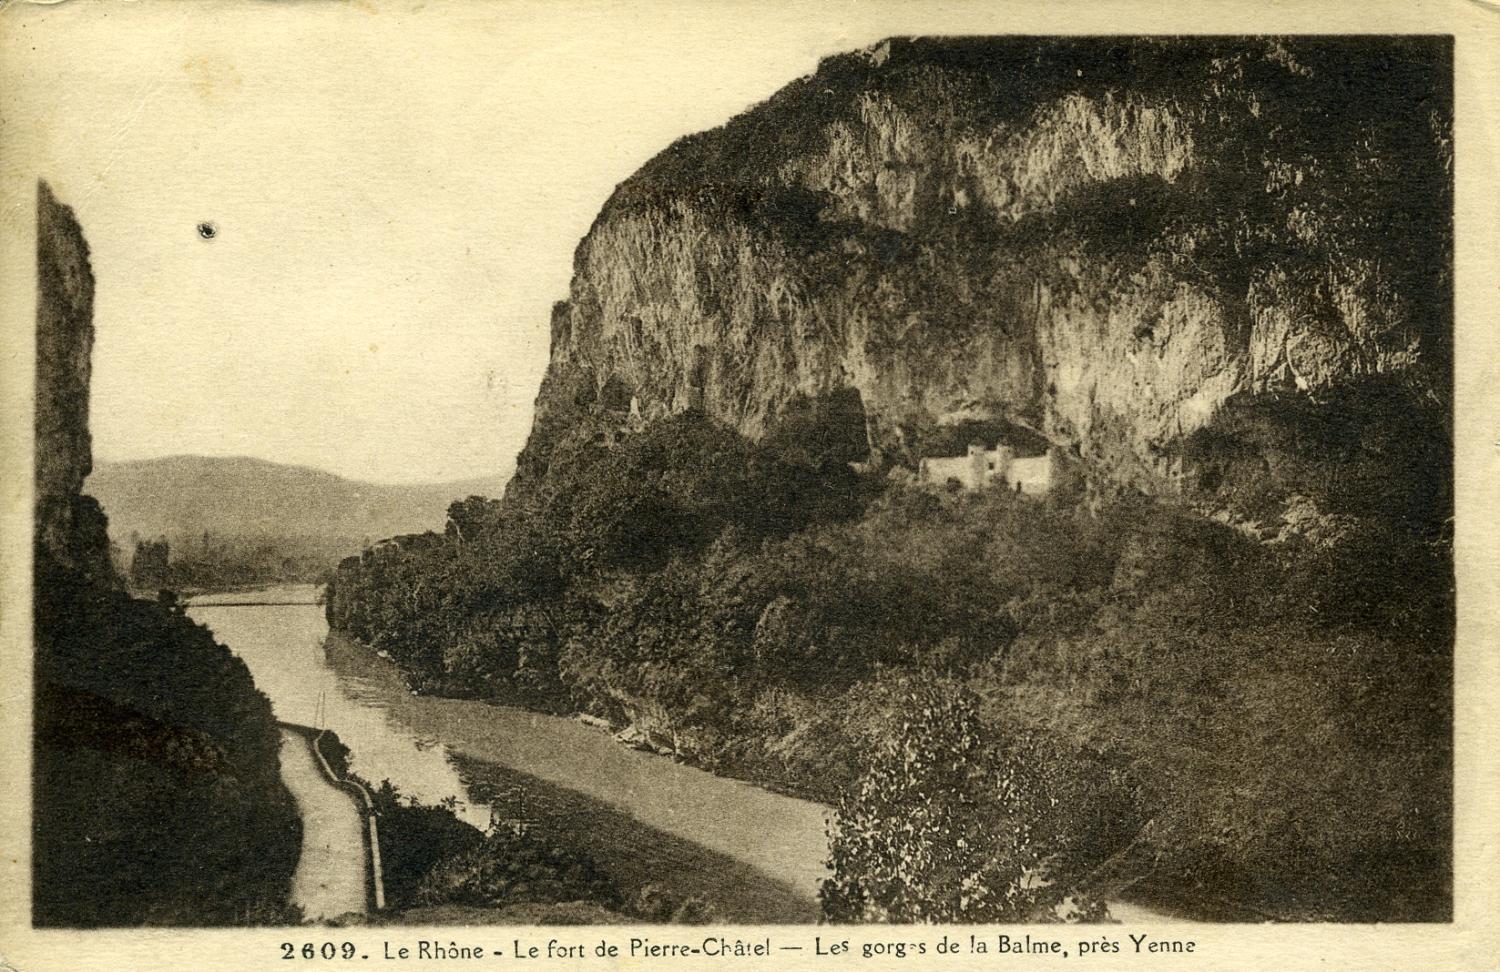 Le Rhône - Le fort de Pierre-Châtel - Les gorges de la Balme, près Yenne.